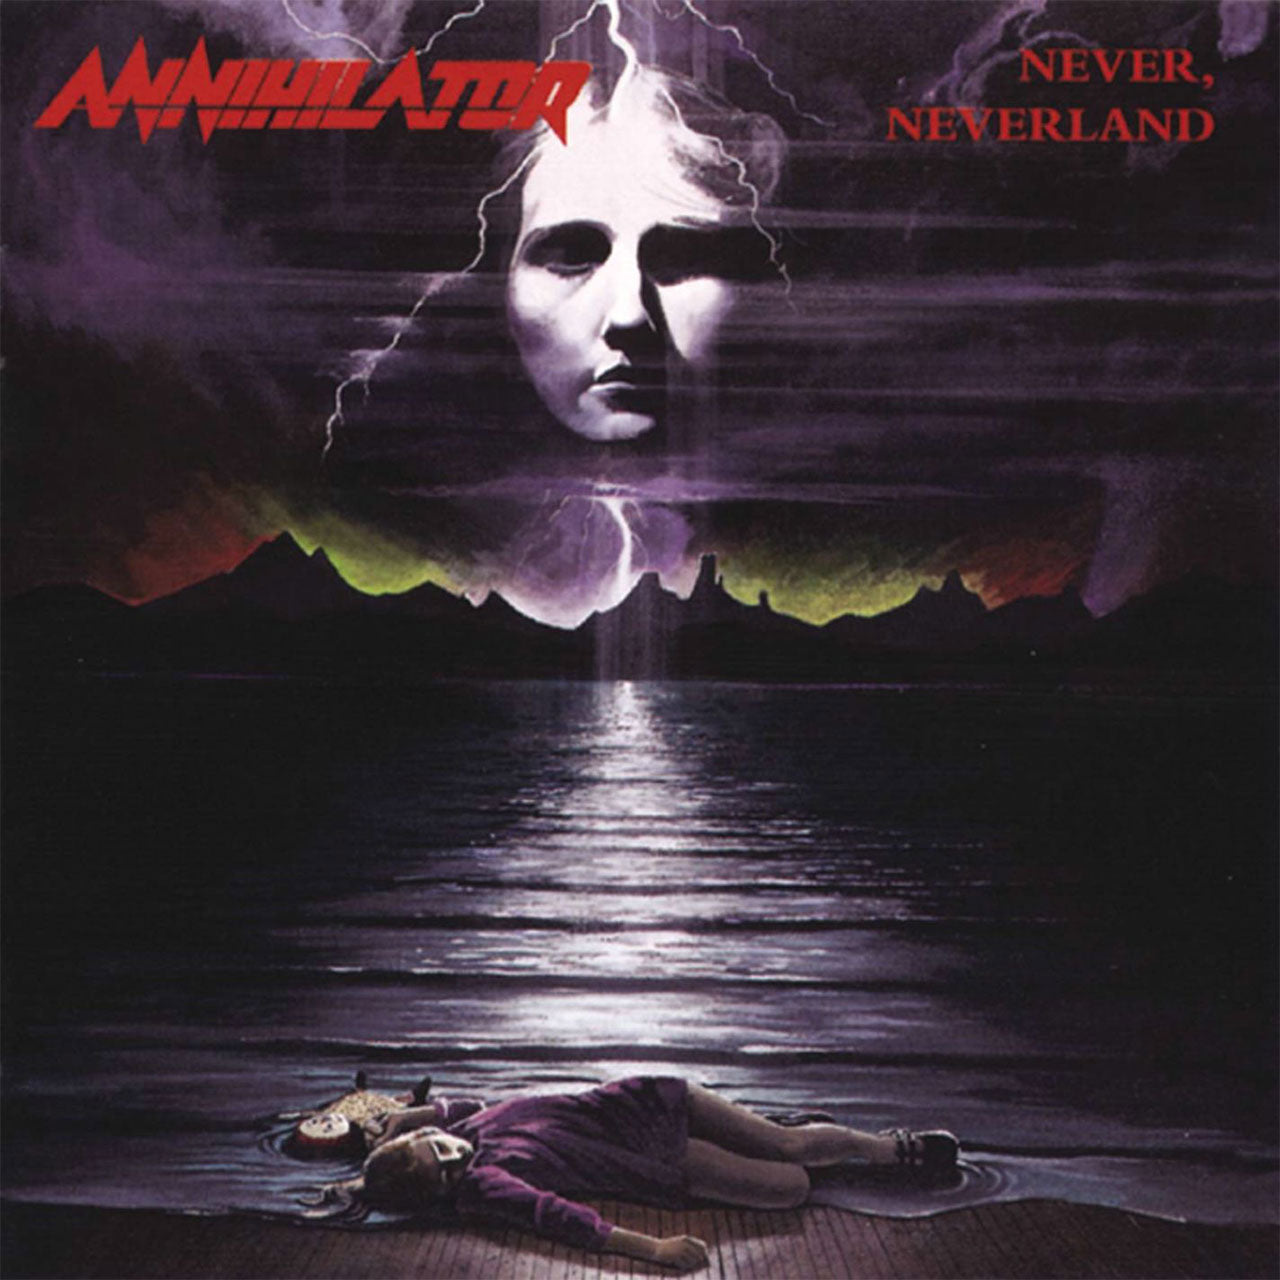 Annihilator - Never, Neverland (1998 Reissue) (CD)